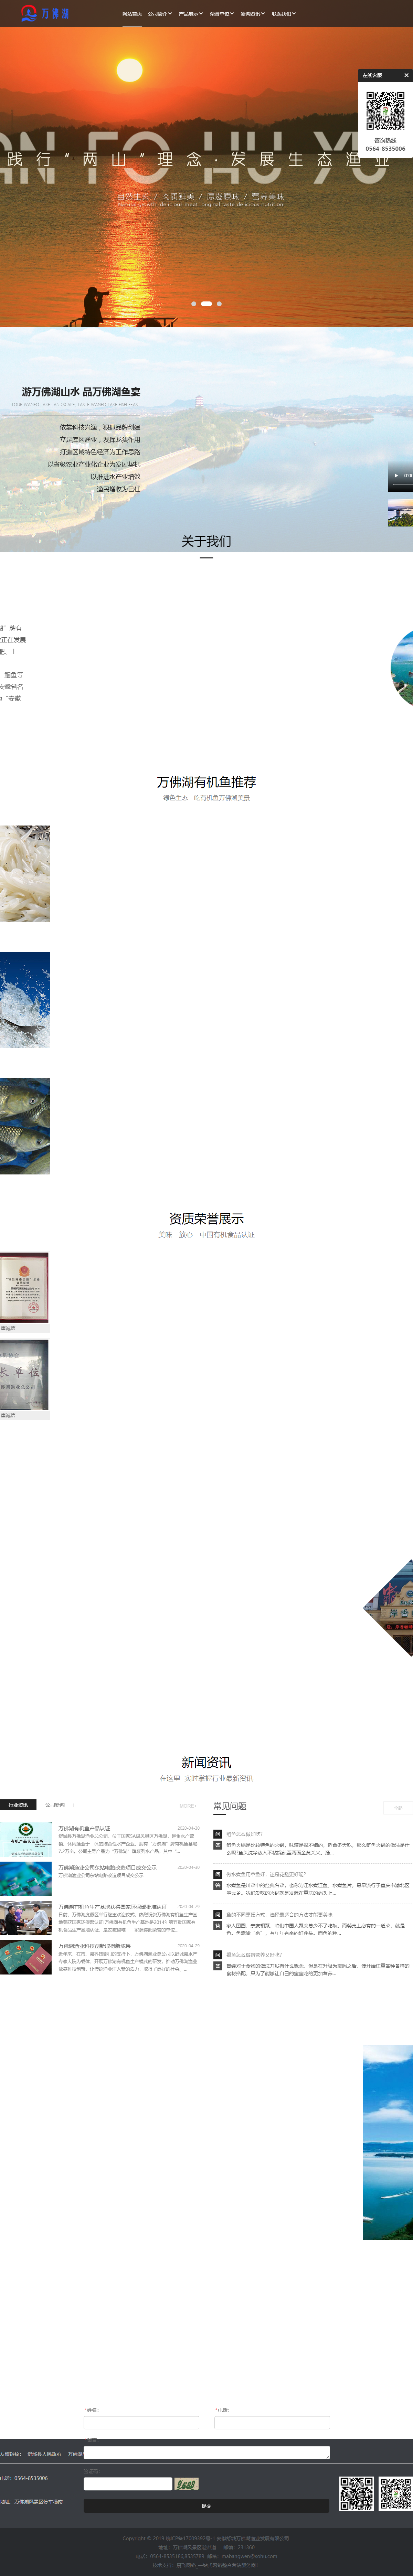 安徽舒城万佛湖渔业发展有限公司网站案例